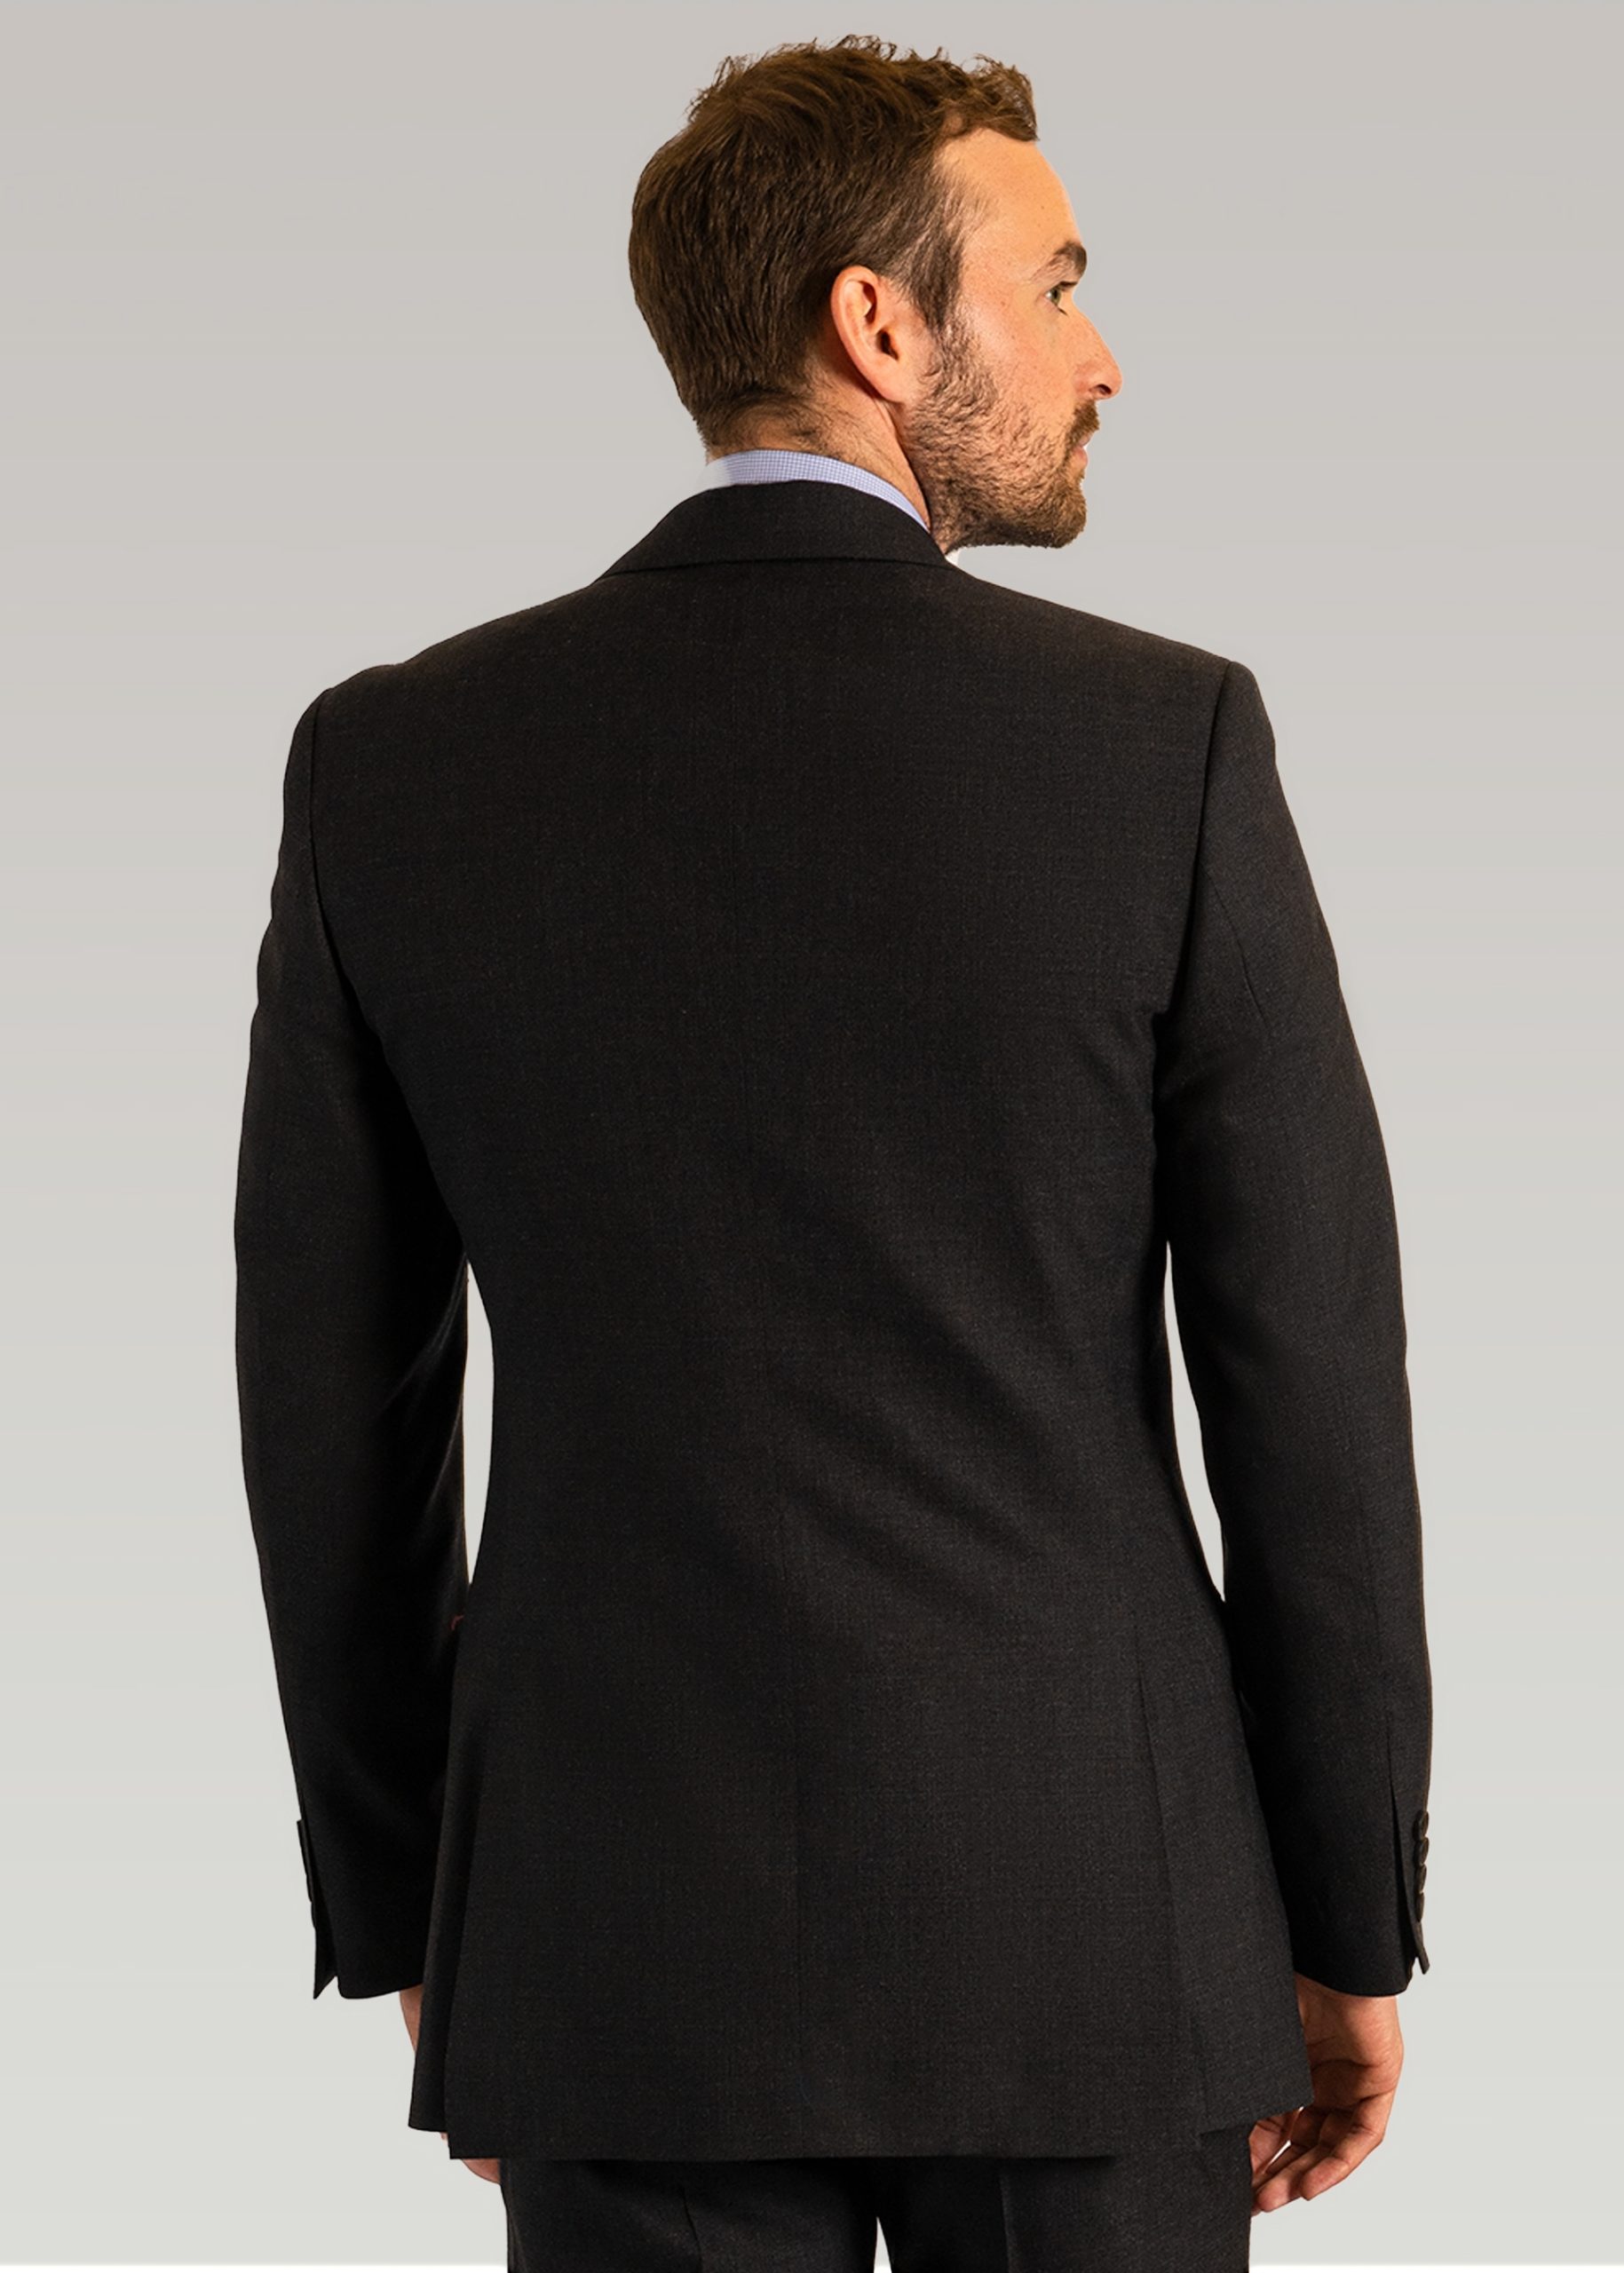 Back photograph of men’s plain business suit